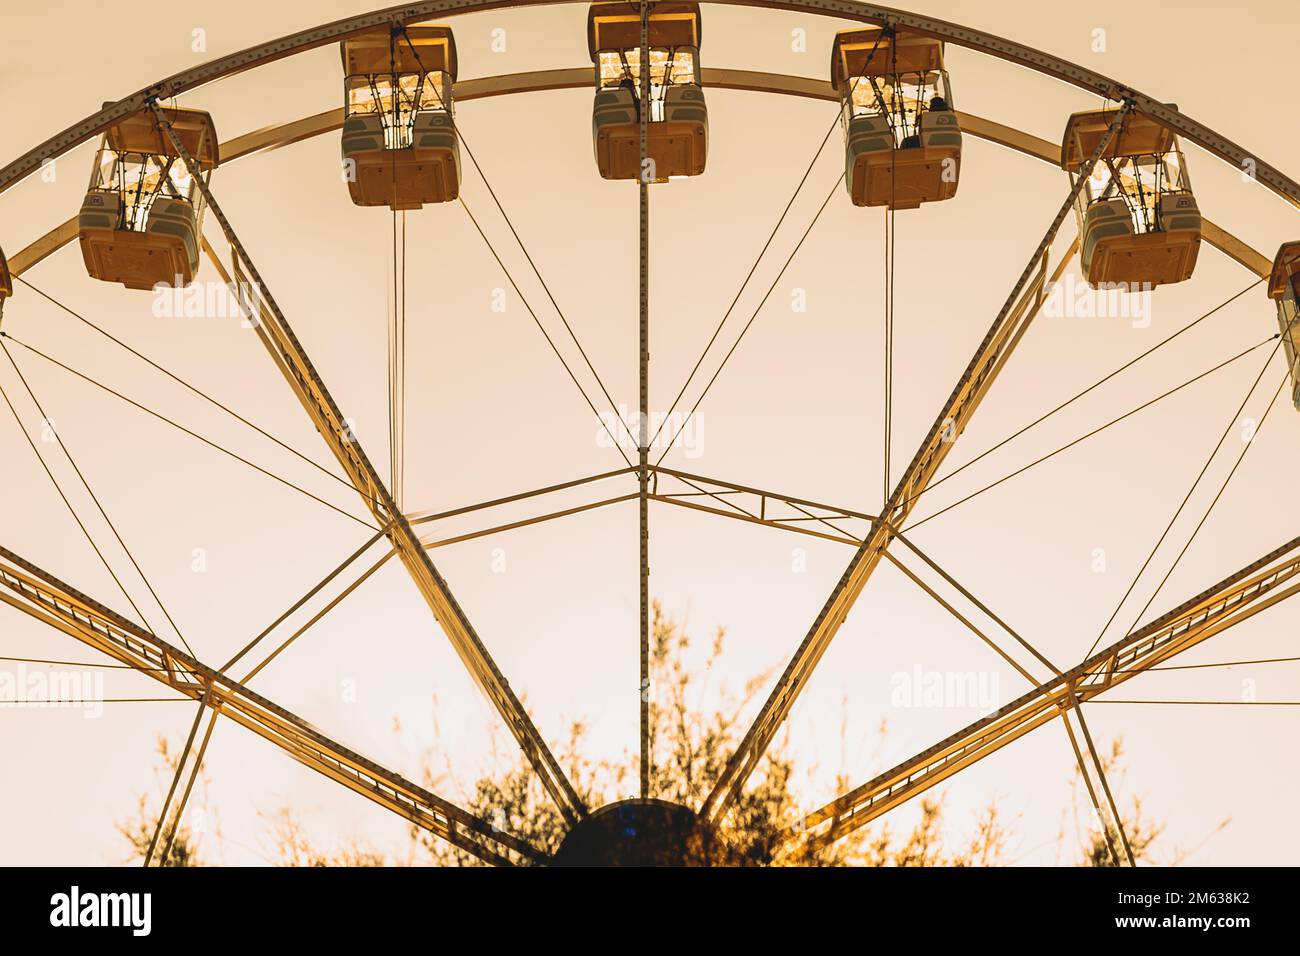 Angle bas de la roue de Ferris avec des gondoles situées contre le ciel de coucher de soleil sans nuages sur le parc d'expositions de Donostia San Sebastian, Espagne Banque D'Images